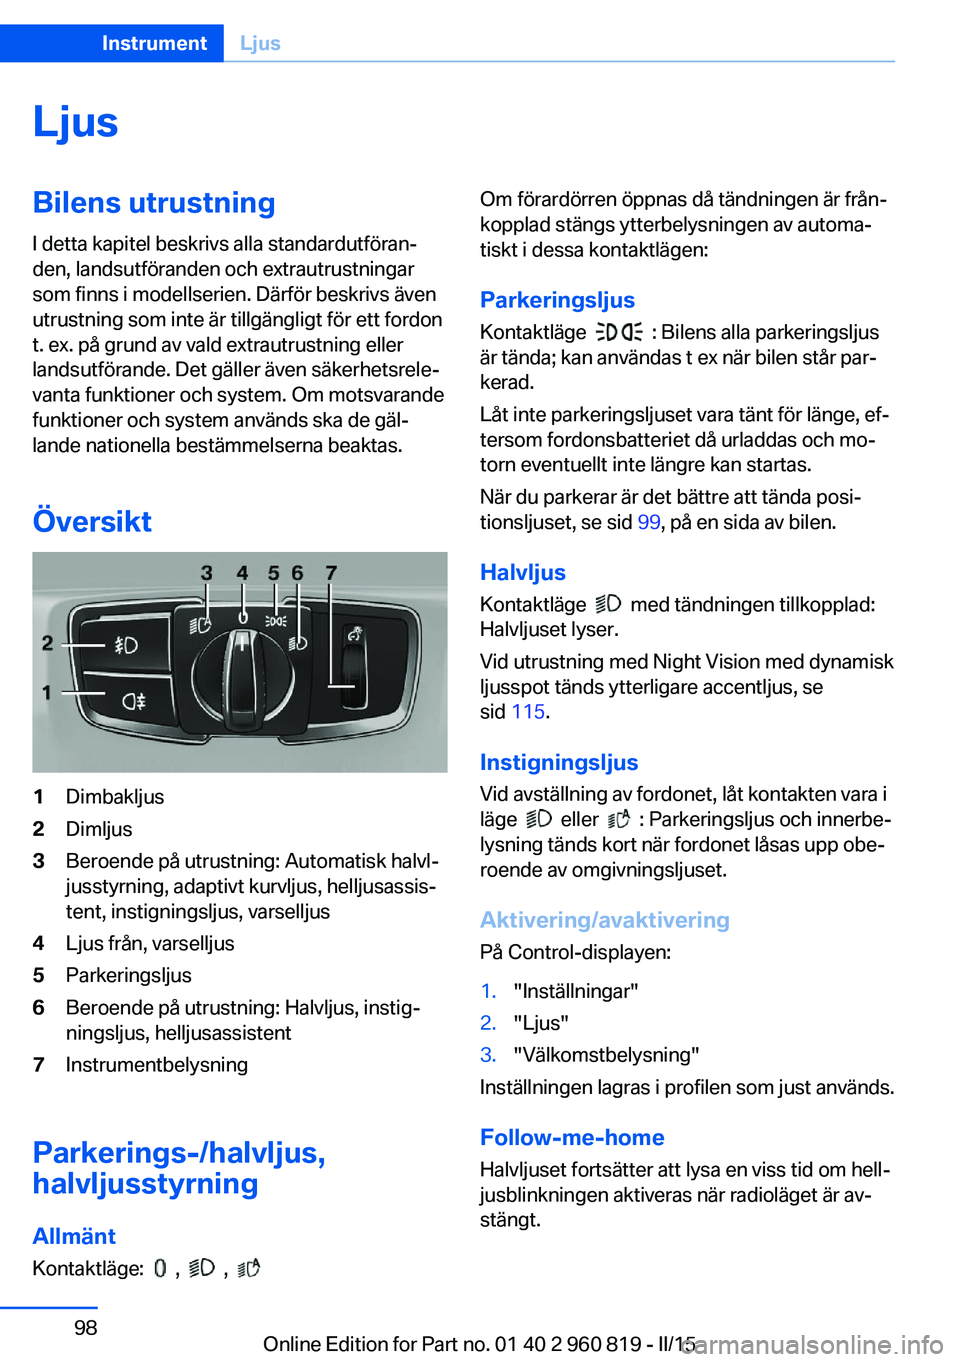 BMW X6 M 2016  InstruktionsbÖcker (in Swedish) LjusBilens utrustningI detta kapitel beskrivs alla standardutföran‐
den, landsutföranden och extrautrustningar
som finns i modellserien. Därför beskrivs även
utrustning som inte är tillgängli